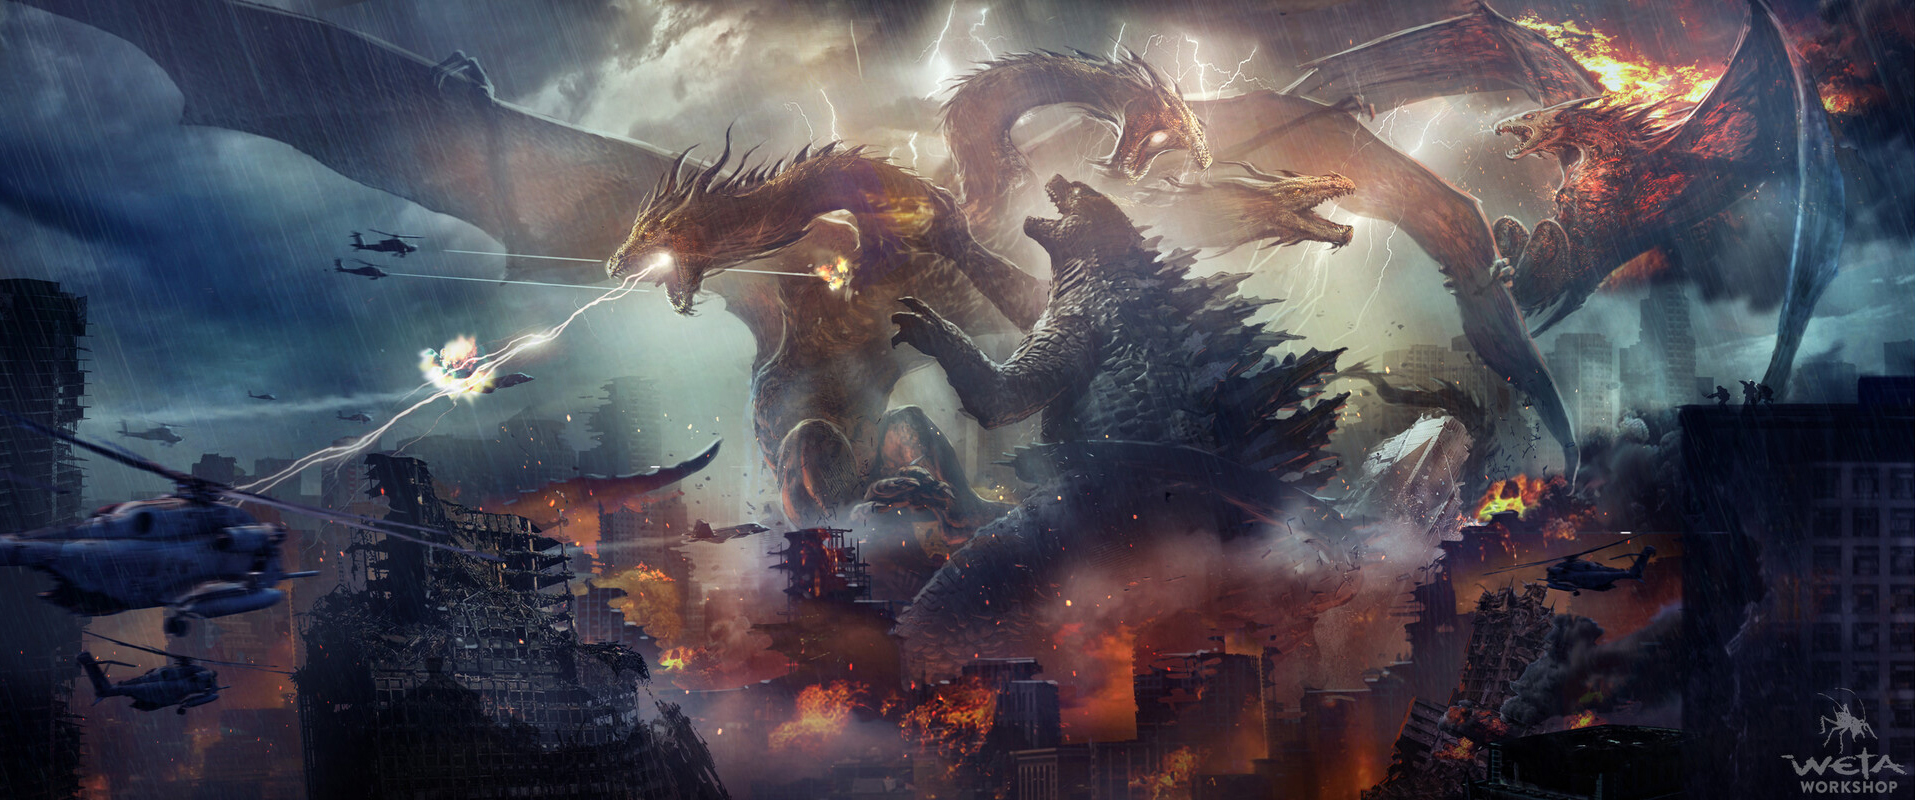 Godzilla Godzilla King Of The Monsters Kaiju Artwork Weta Workshop King Ghi...